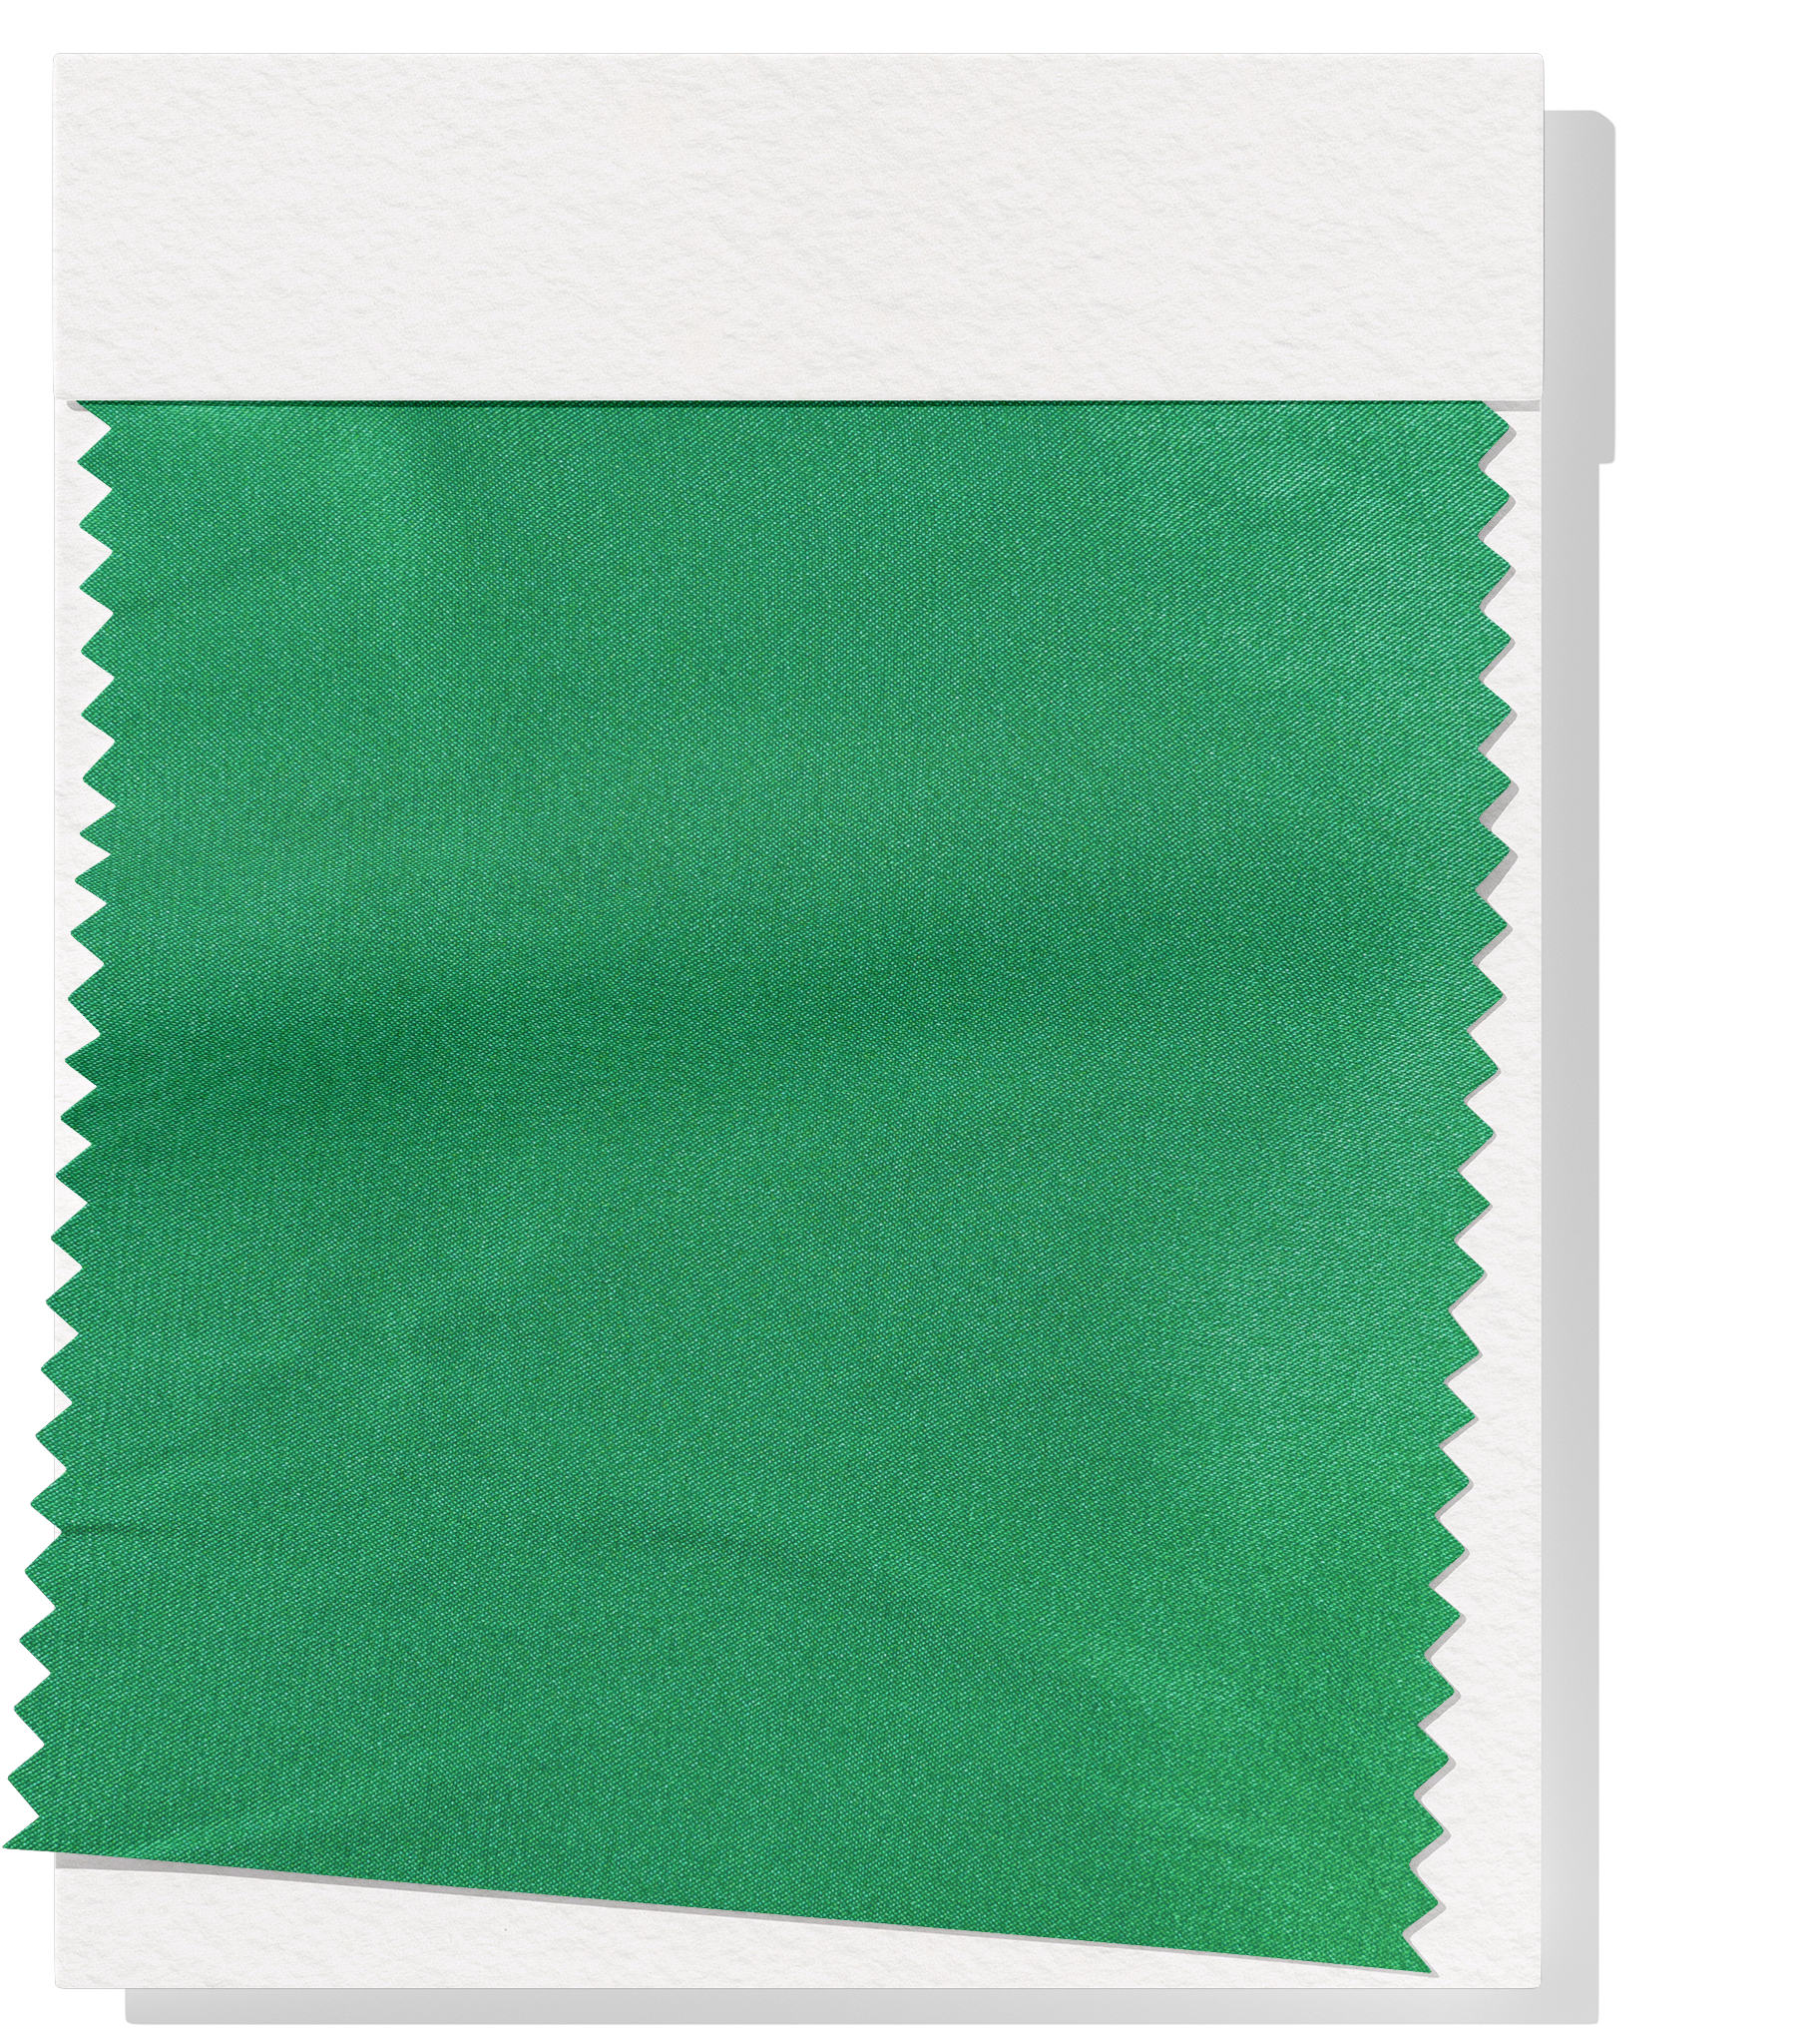 Stretch Satin $12.00p/m - Emerald Green